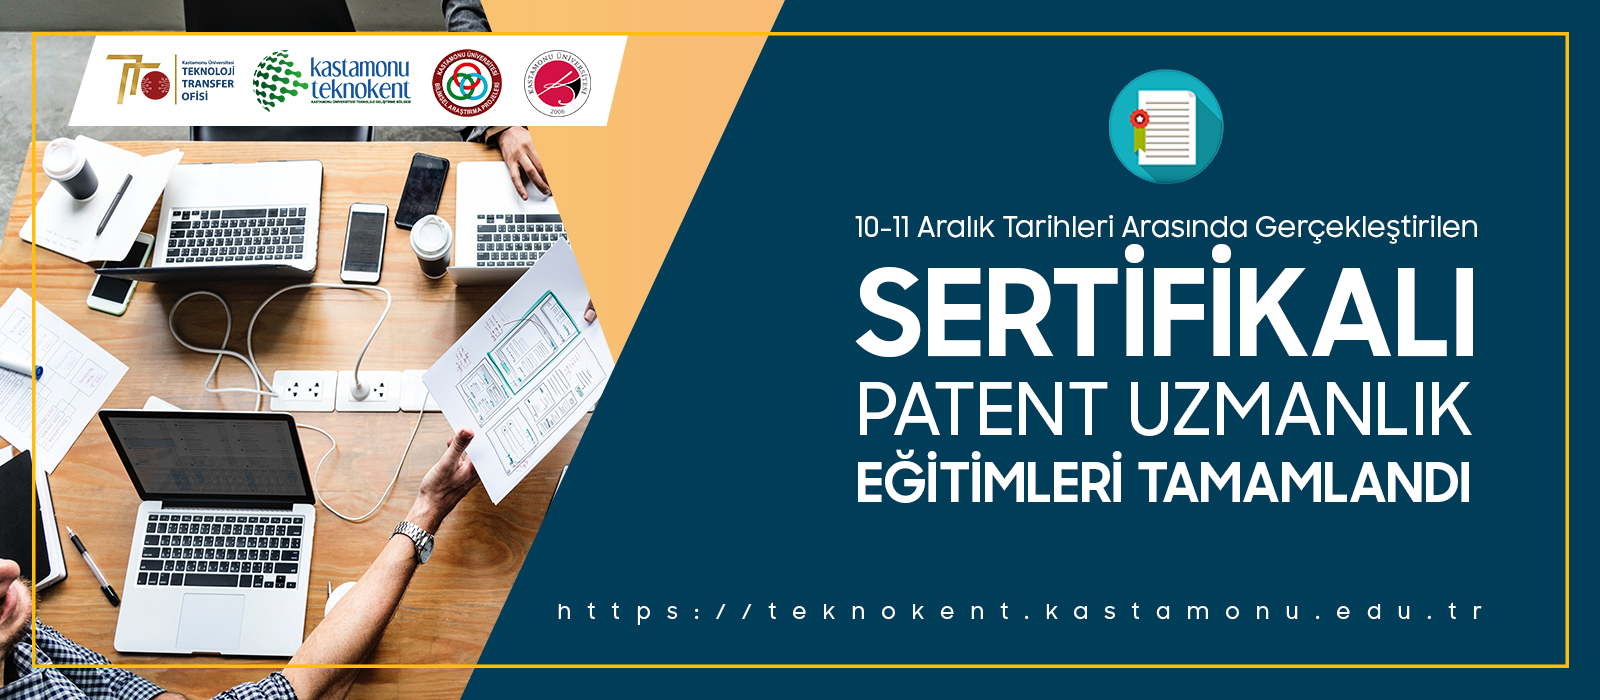 Sertifikalı Patent Uzmanlık Eğitimleri Tamamlandı